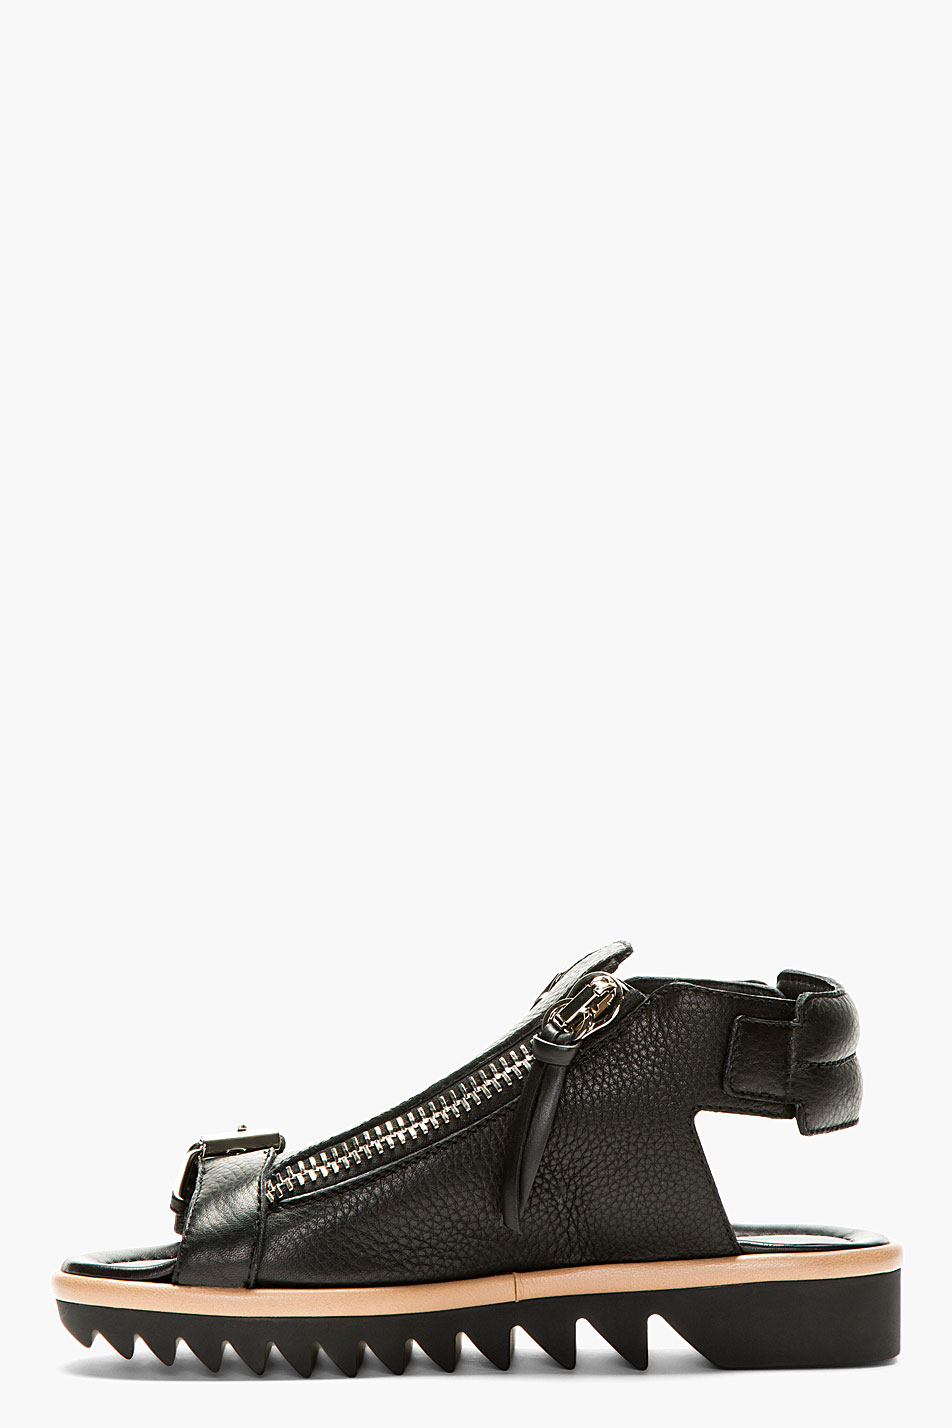 Giuseppe Zanotti Black Grain Leather Olmo Zip Sandals in Black for Men ...